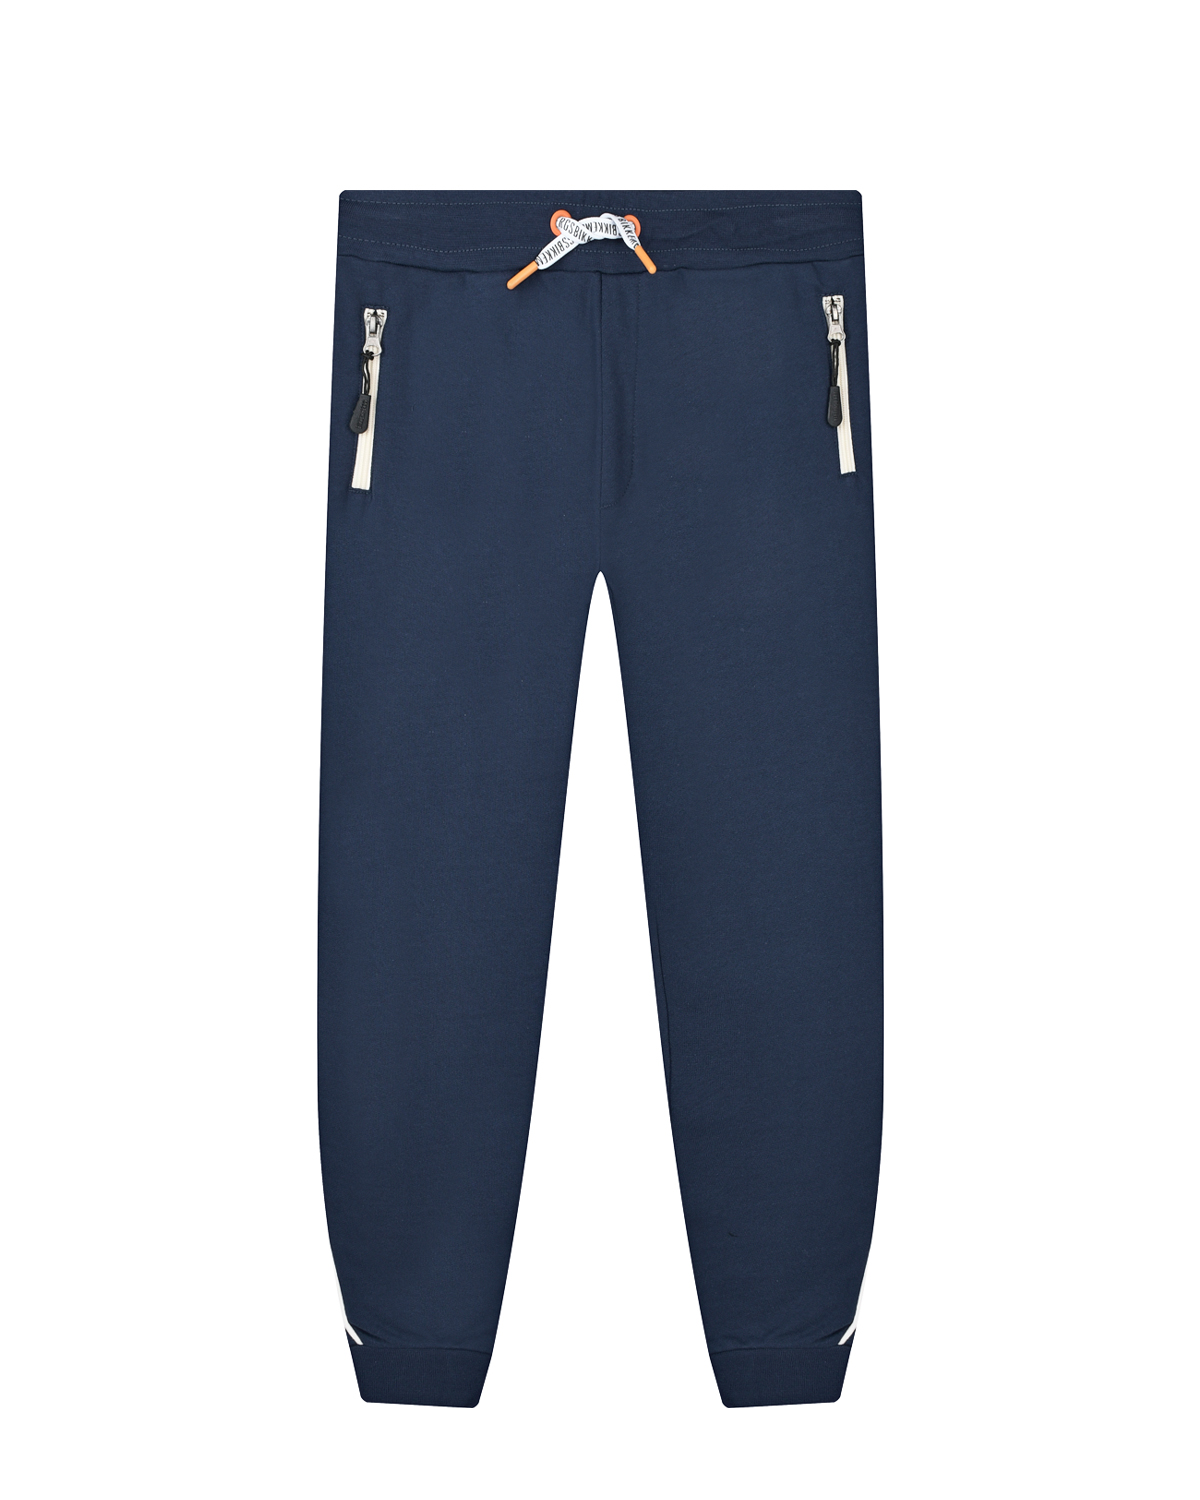 Синие спортивные брюки с поясом на кулиске Bikkembergs детские, размер 164, цвет синий